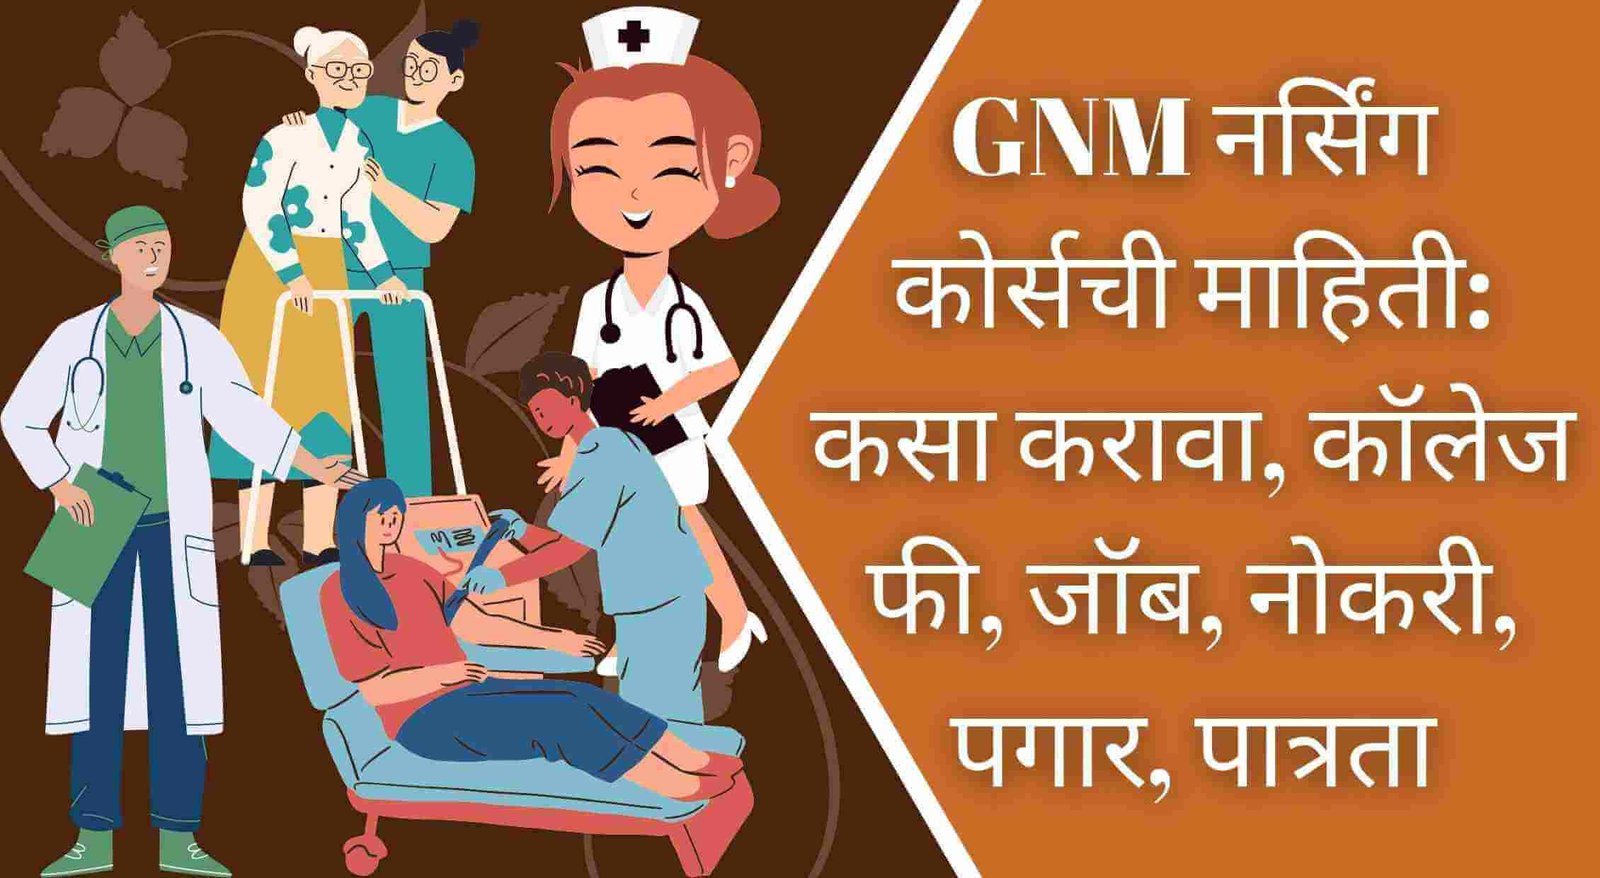 GNM Nursing Course Information In Marathi